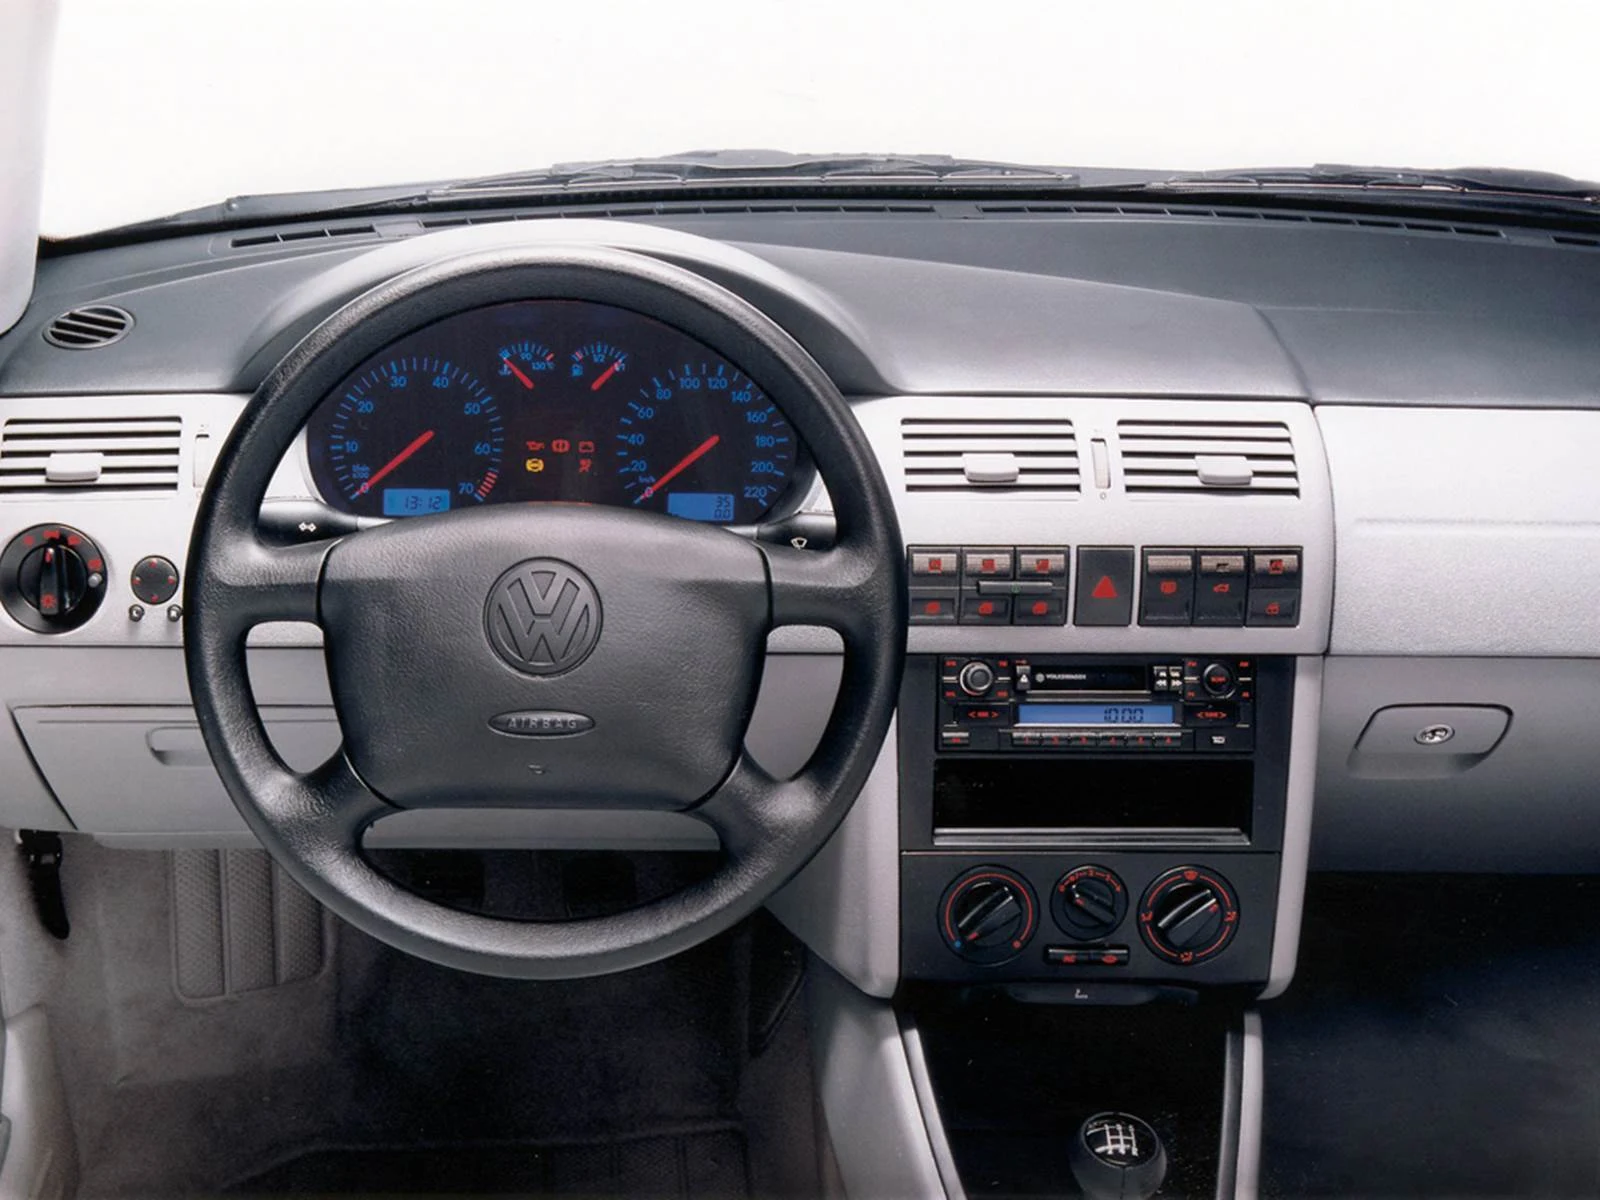 VW Gol e Parati linha 2003